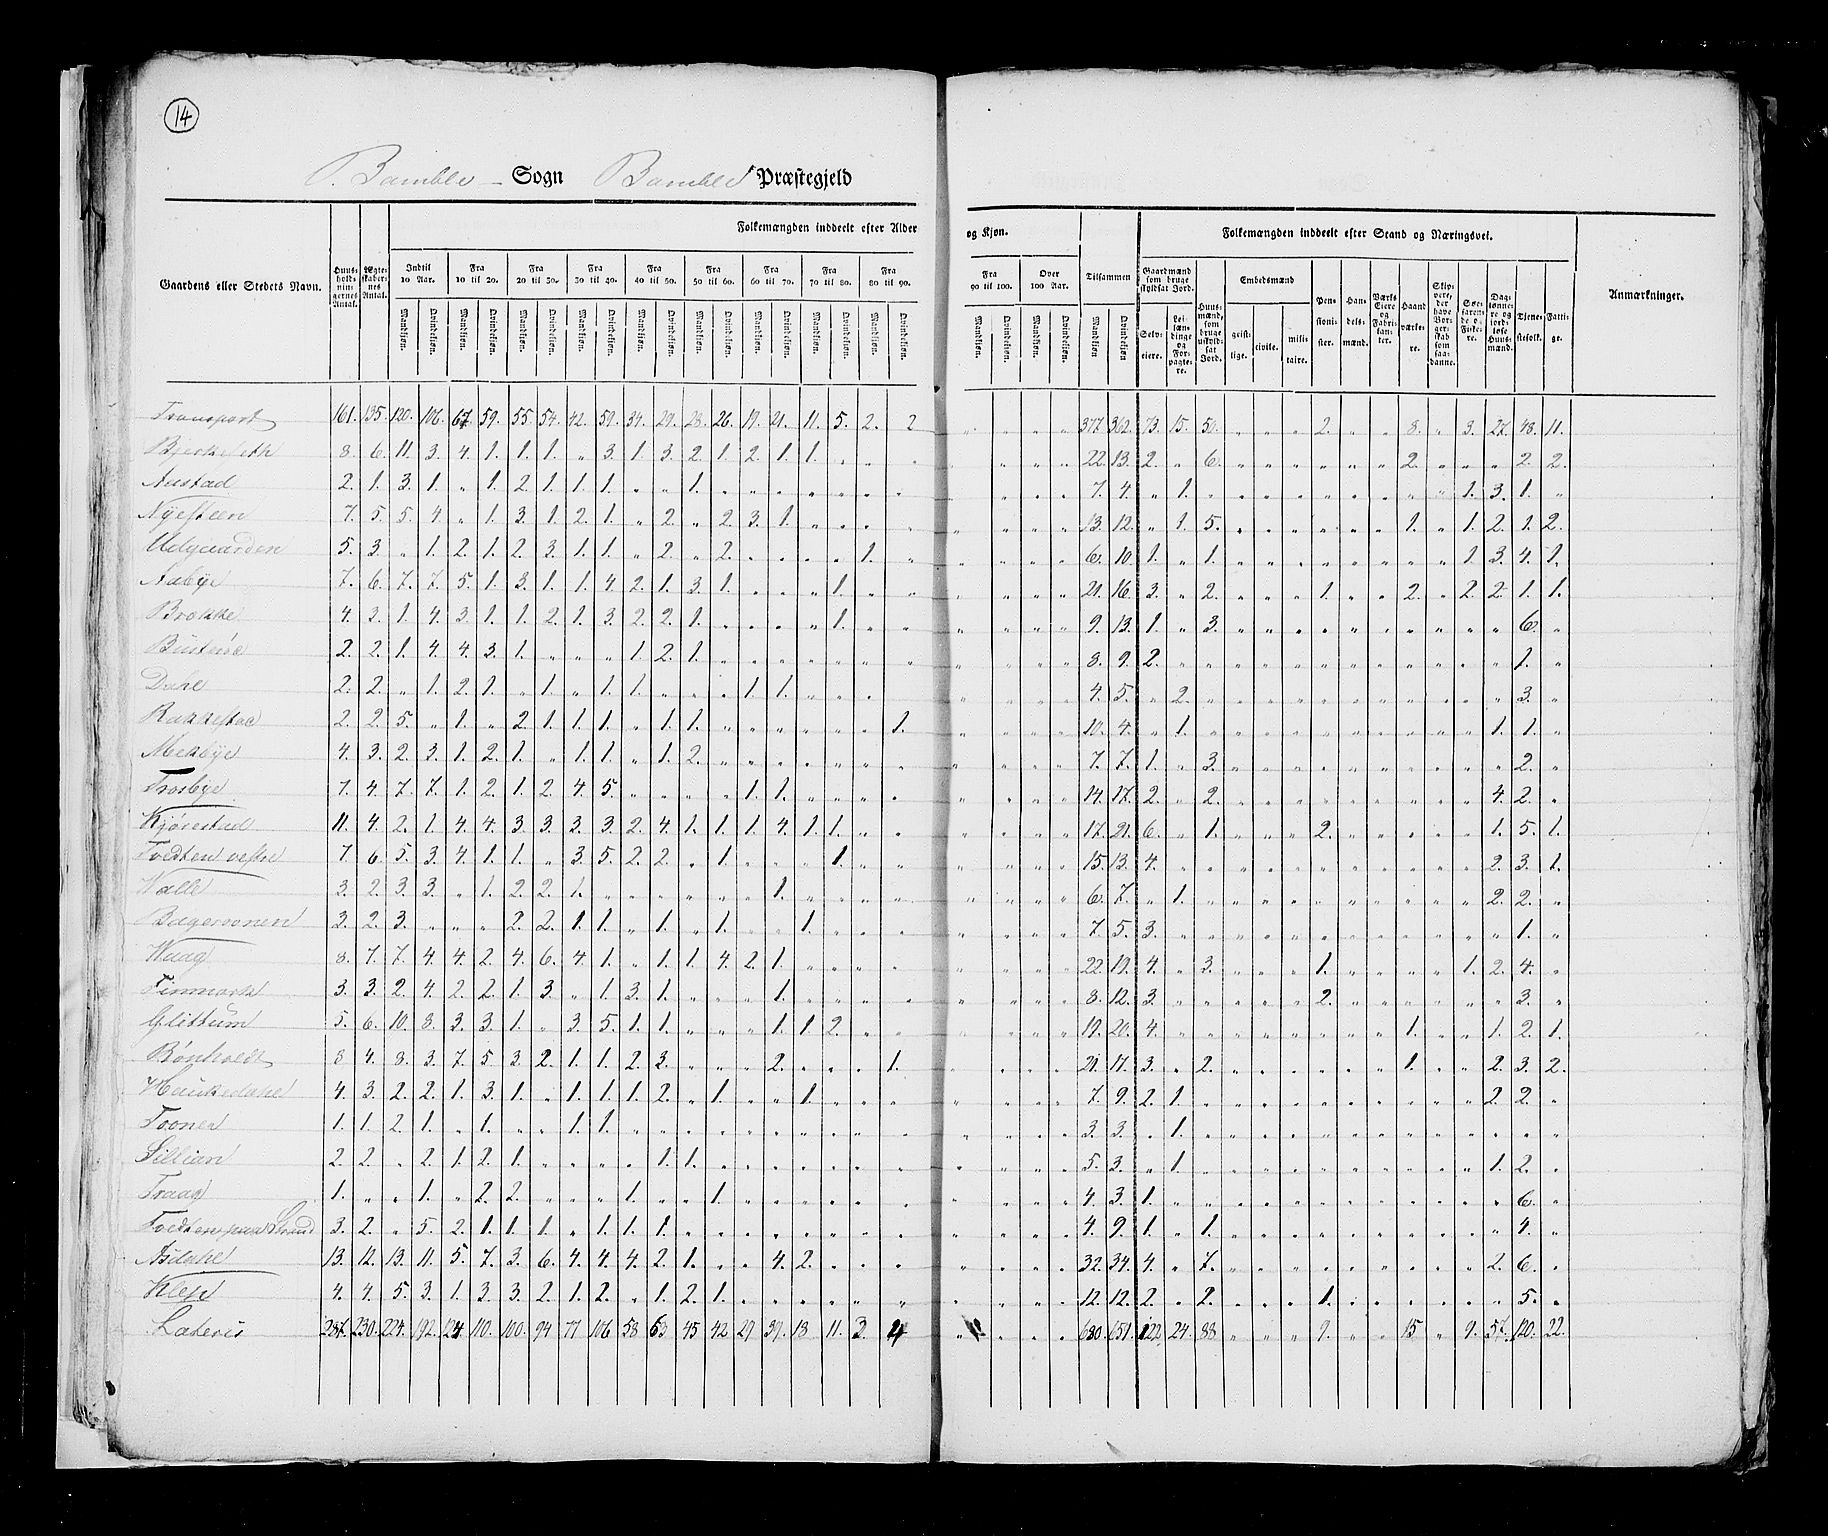 RA, Census 1825, vol. 9: Bratsberg amt, 1825, p. 14